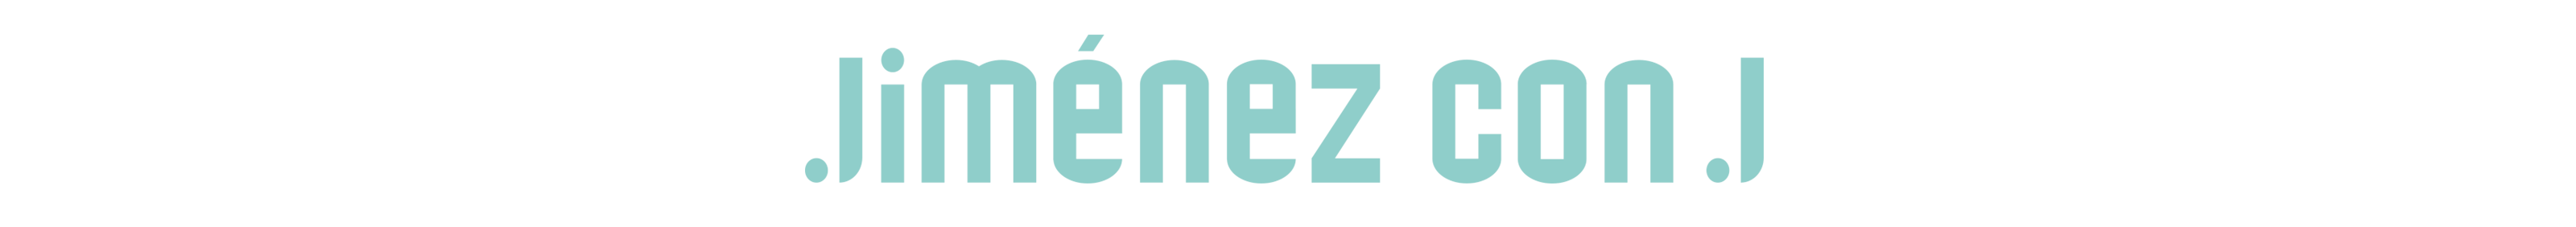 Bannière de profil de Jimenez conj